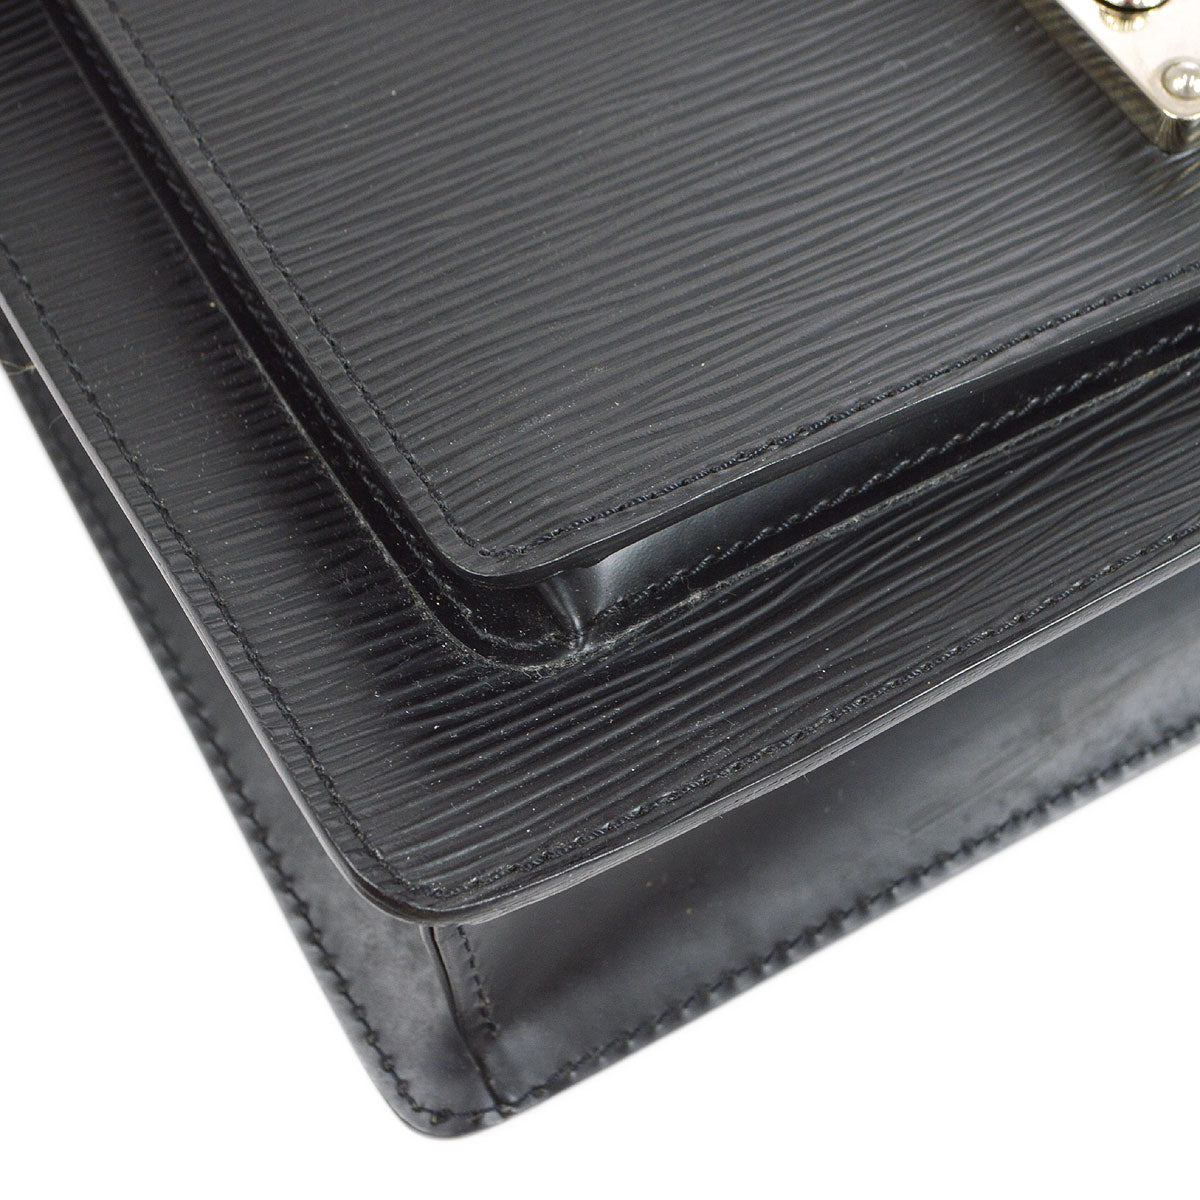 Louis Vuitton Black Epi Monceau 28 Handbag M52792